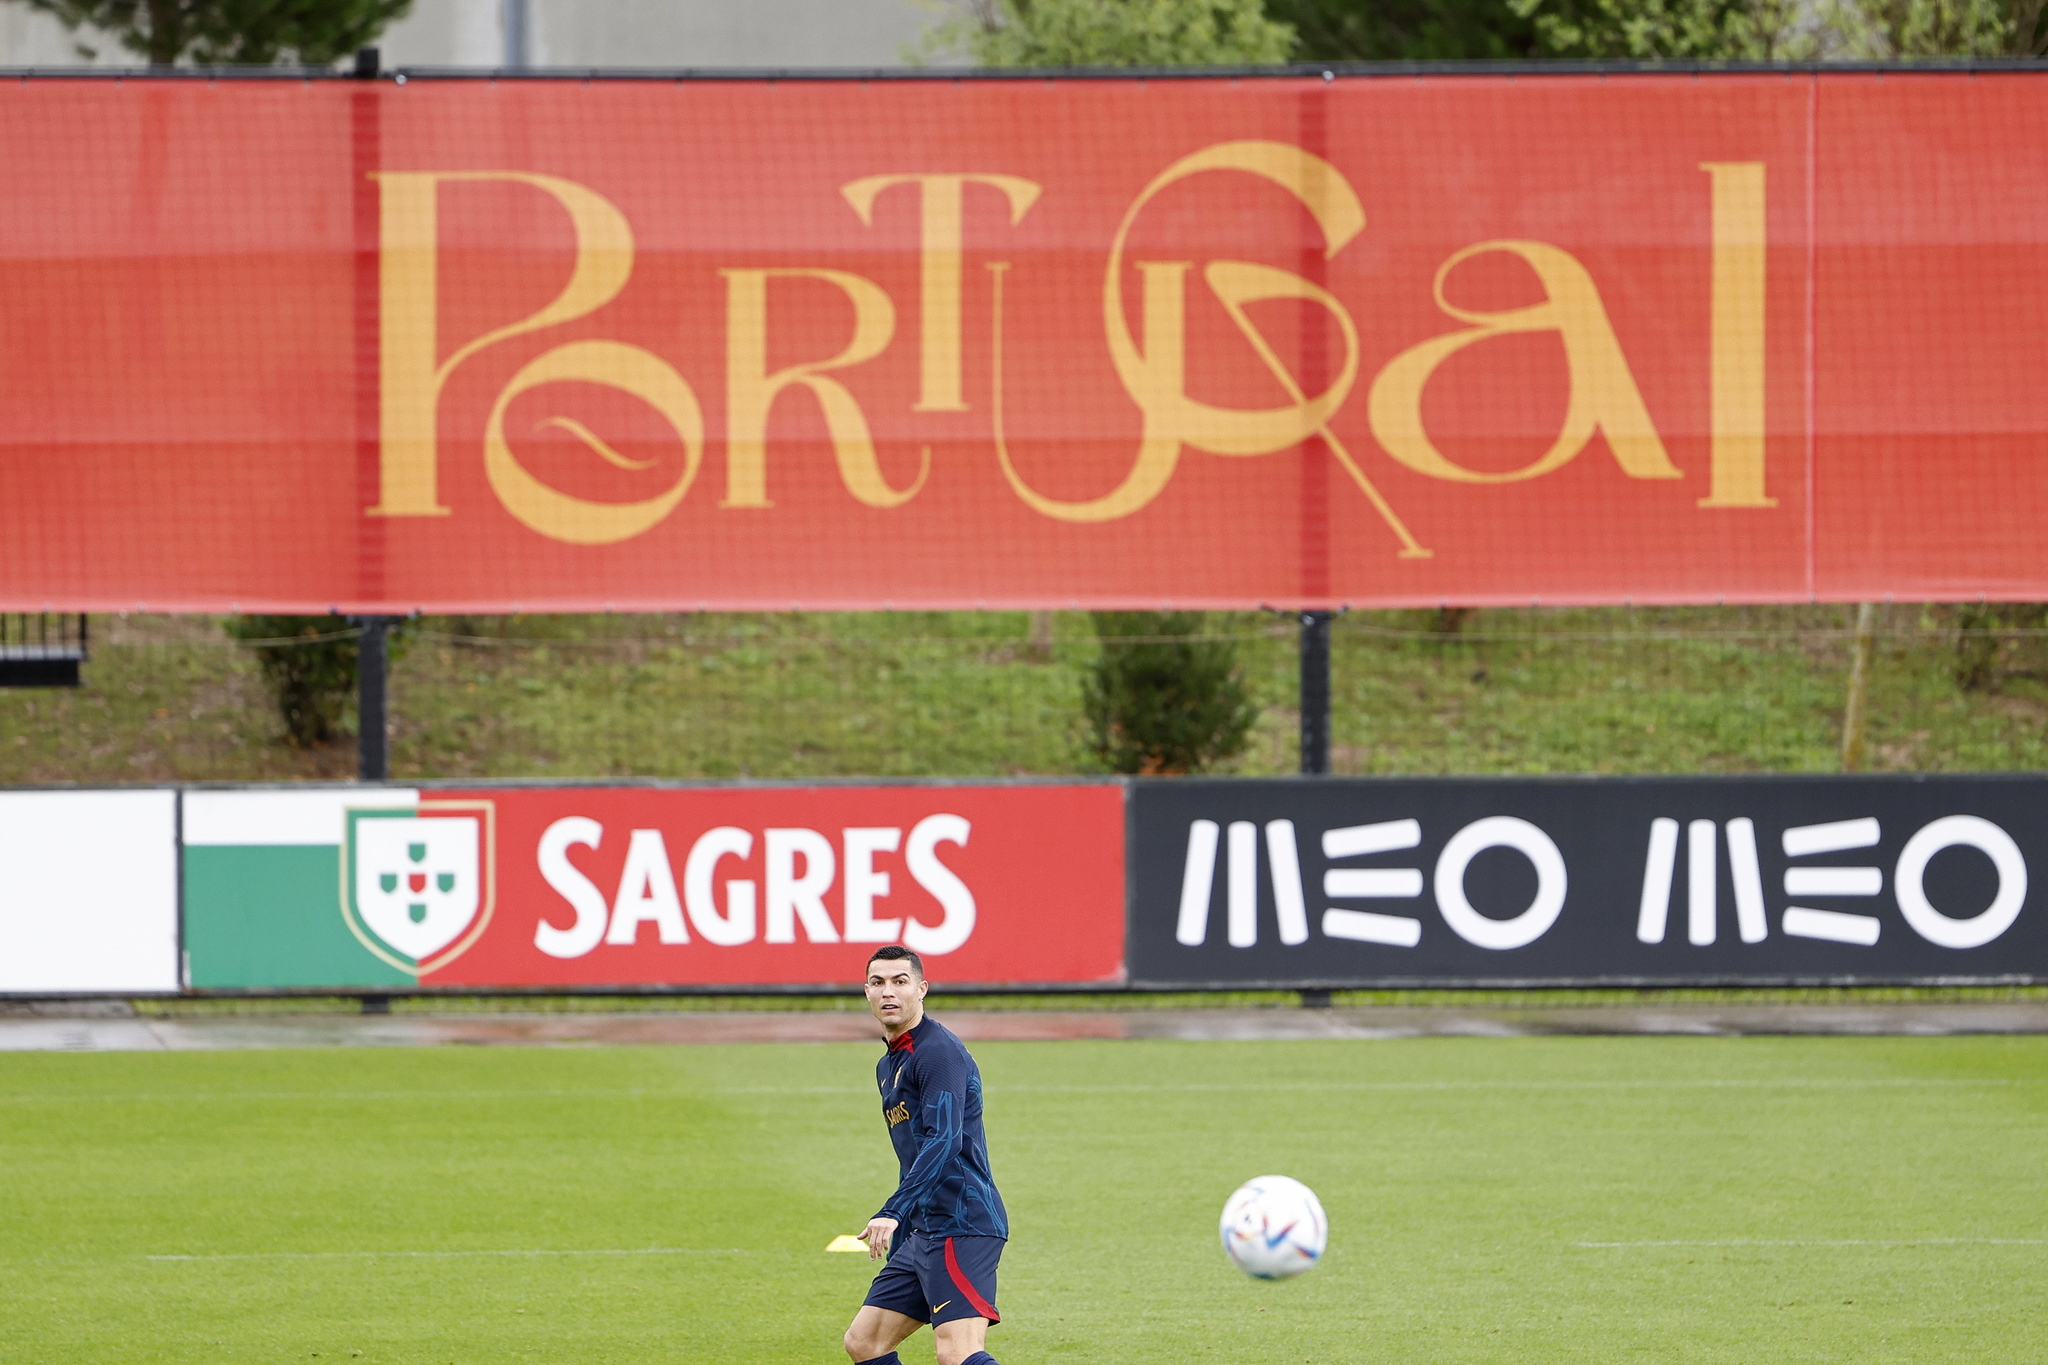 Cristiano in Portugal training. 